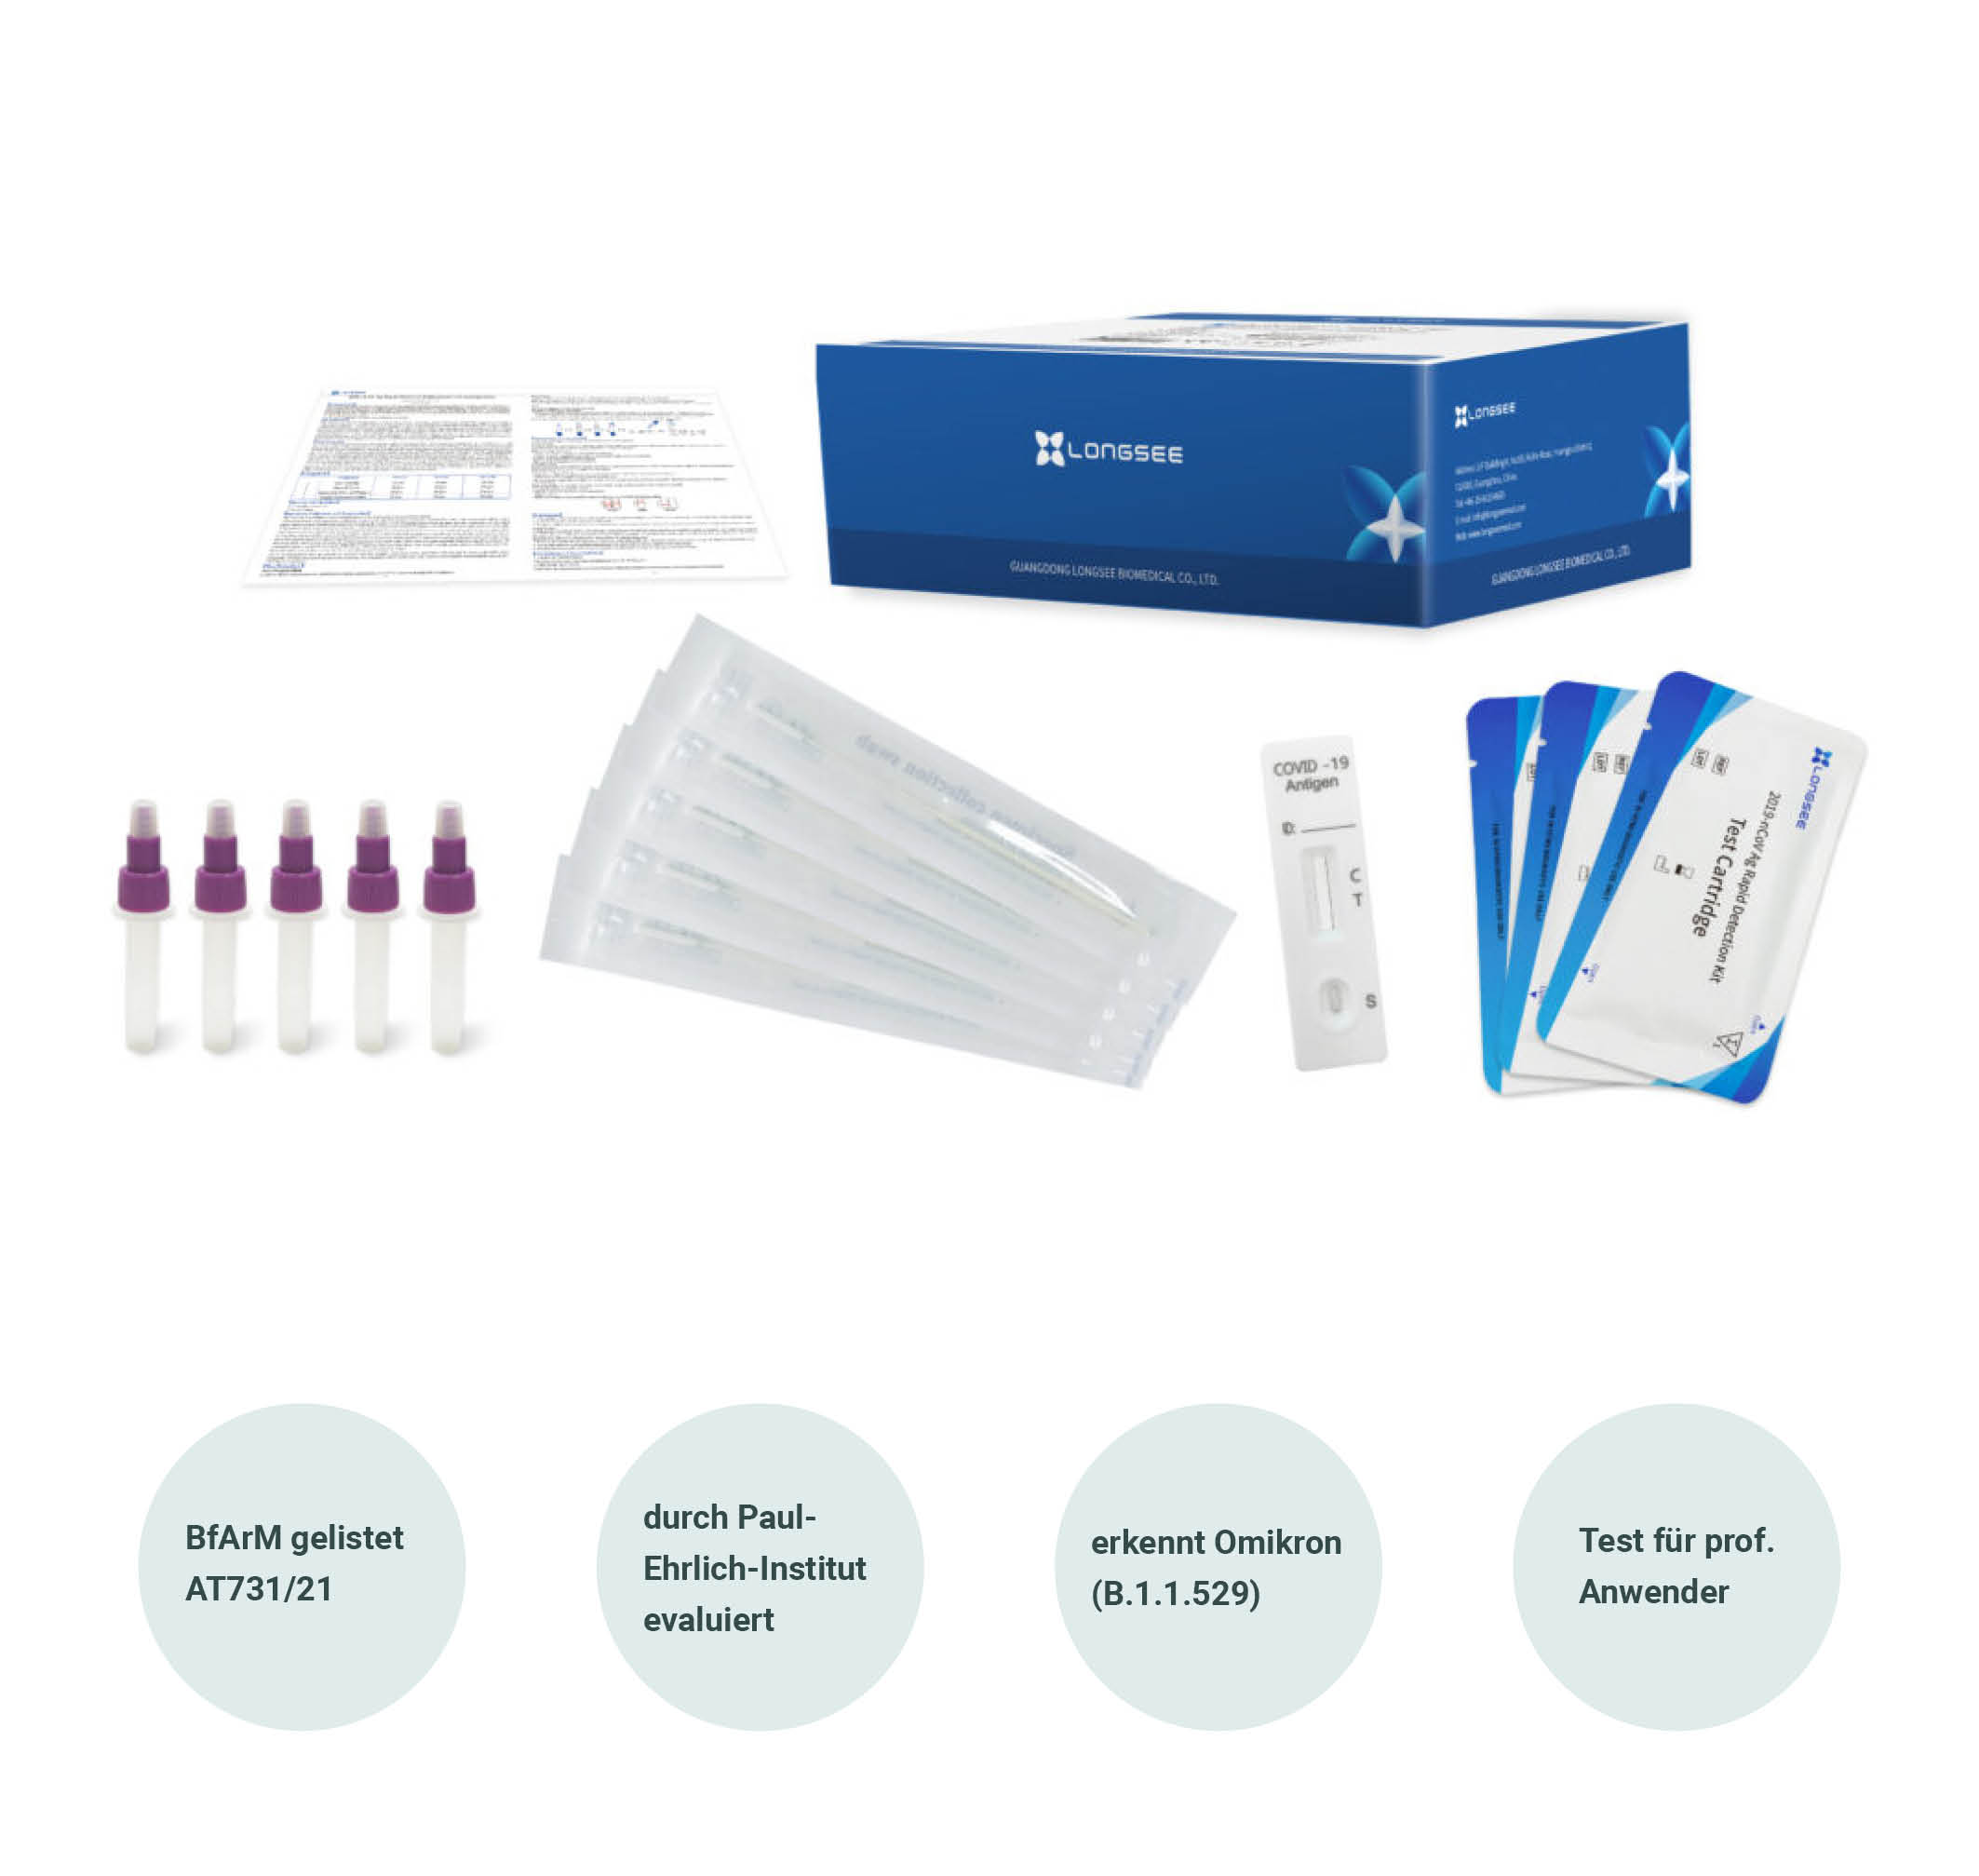 Longsee SARS-CoV-2 Antigen- Schnelltest,  (Nase-Rachen und Rachen) zur professionellen Anwendung, 25er Packung